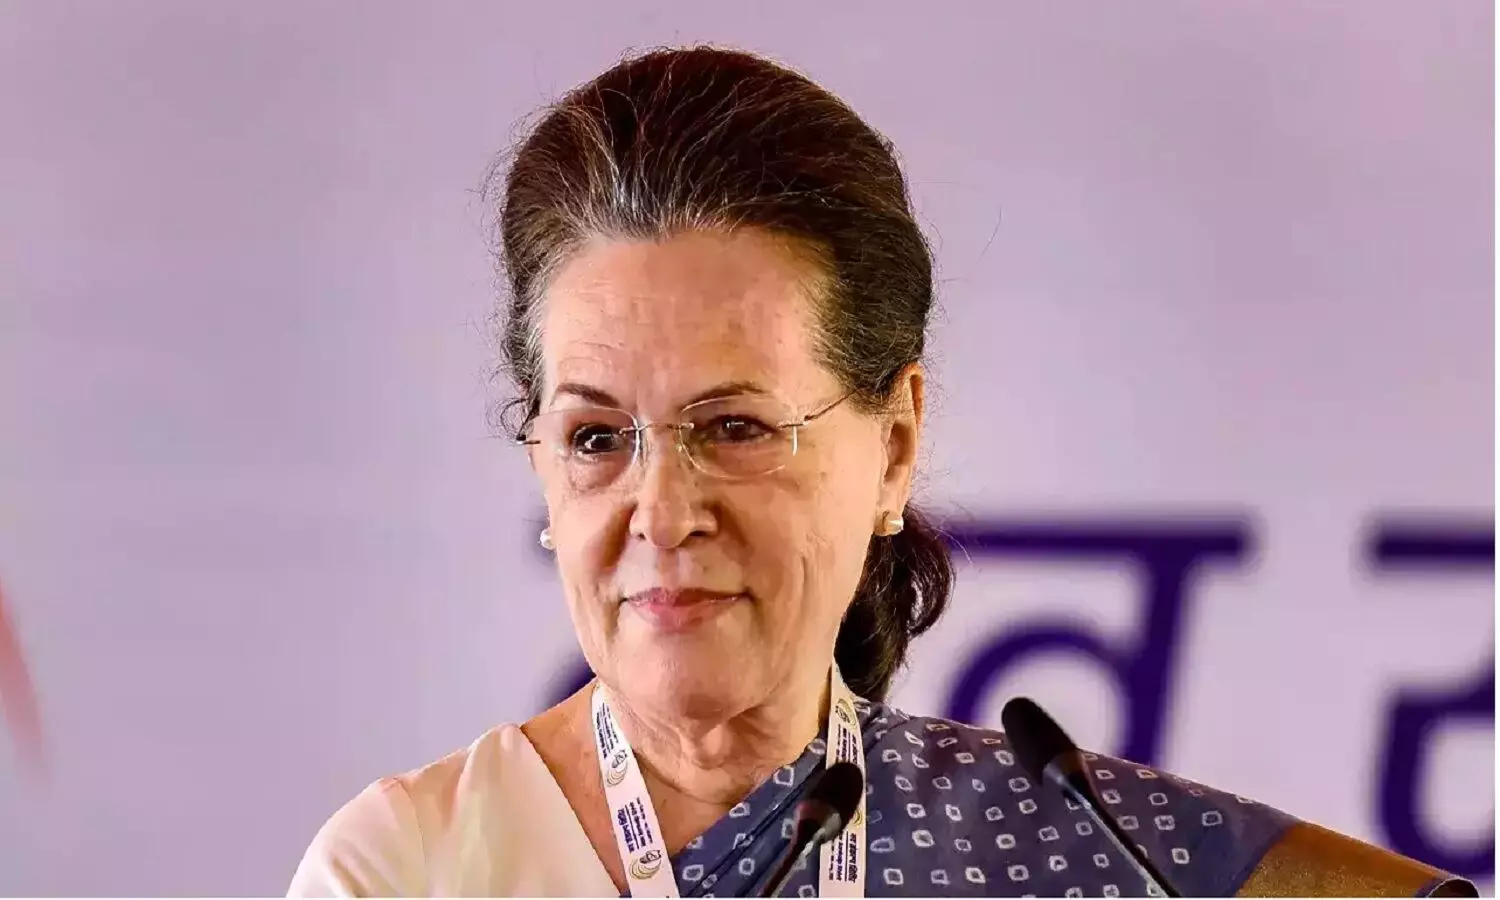 Sonia Gandhi Hospitalized: सोनिया गांधी अस्पातल में भर्ती, महामारी से संक्रमित हैं कांग्रेस राष्ट्रीय अध्यक्ष